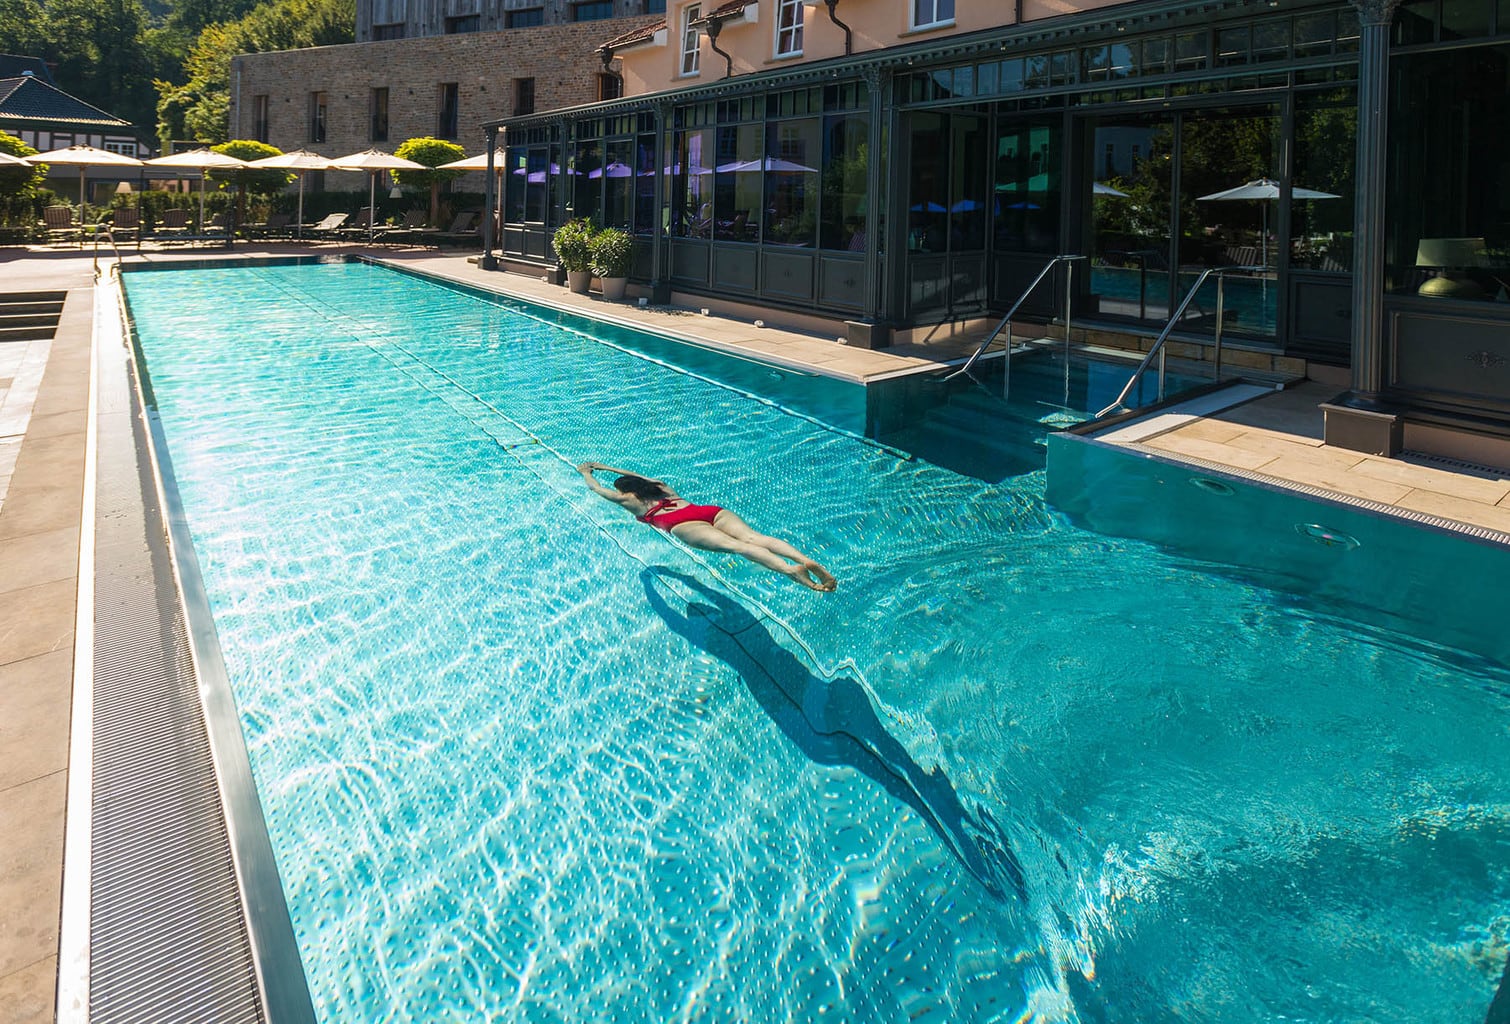 Buitenzwembad van Hotel Bollants in het Duitse Saarland